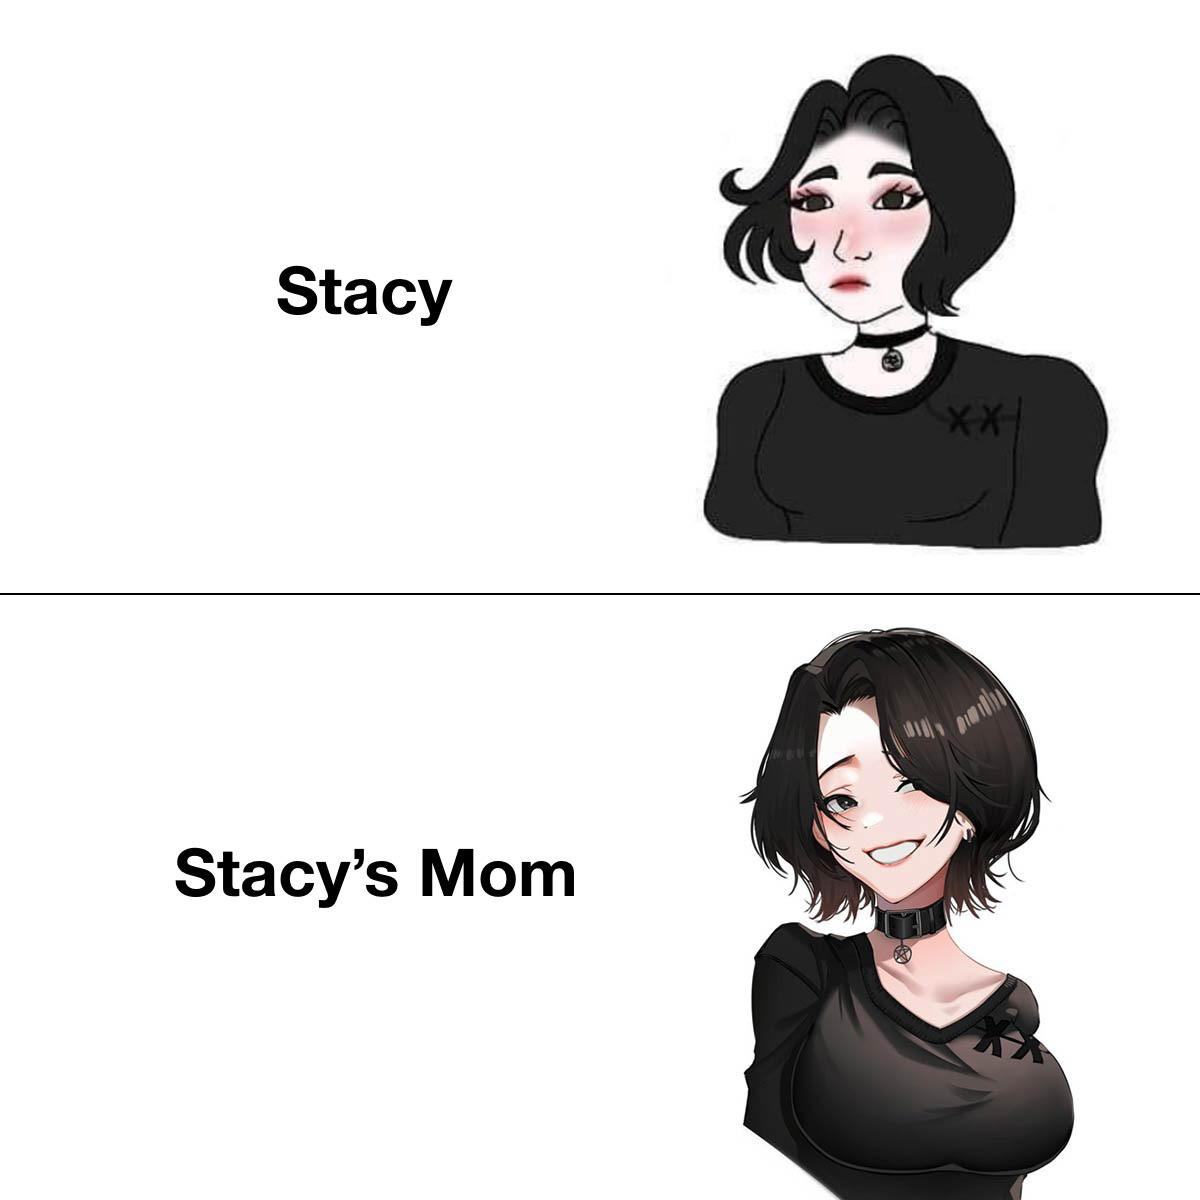 funny memes - dank memes doomer girl vs anime doomer girl - Stacy Xxh Stacy's Mom